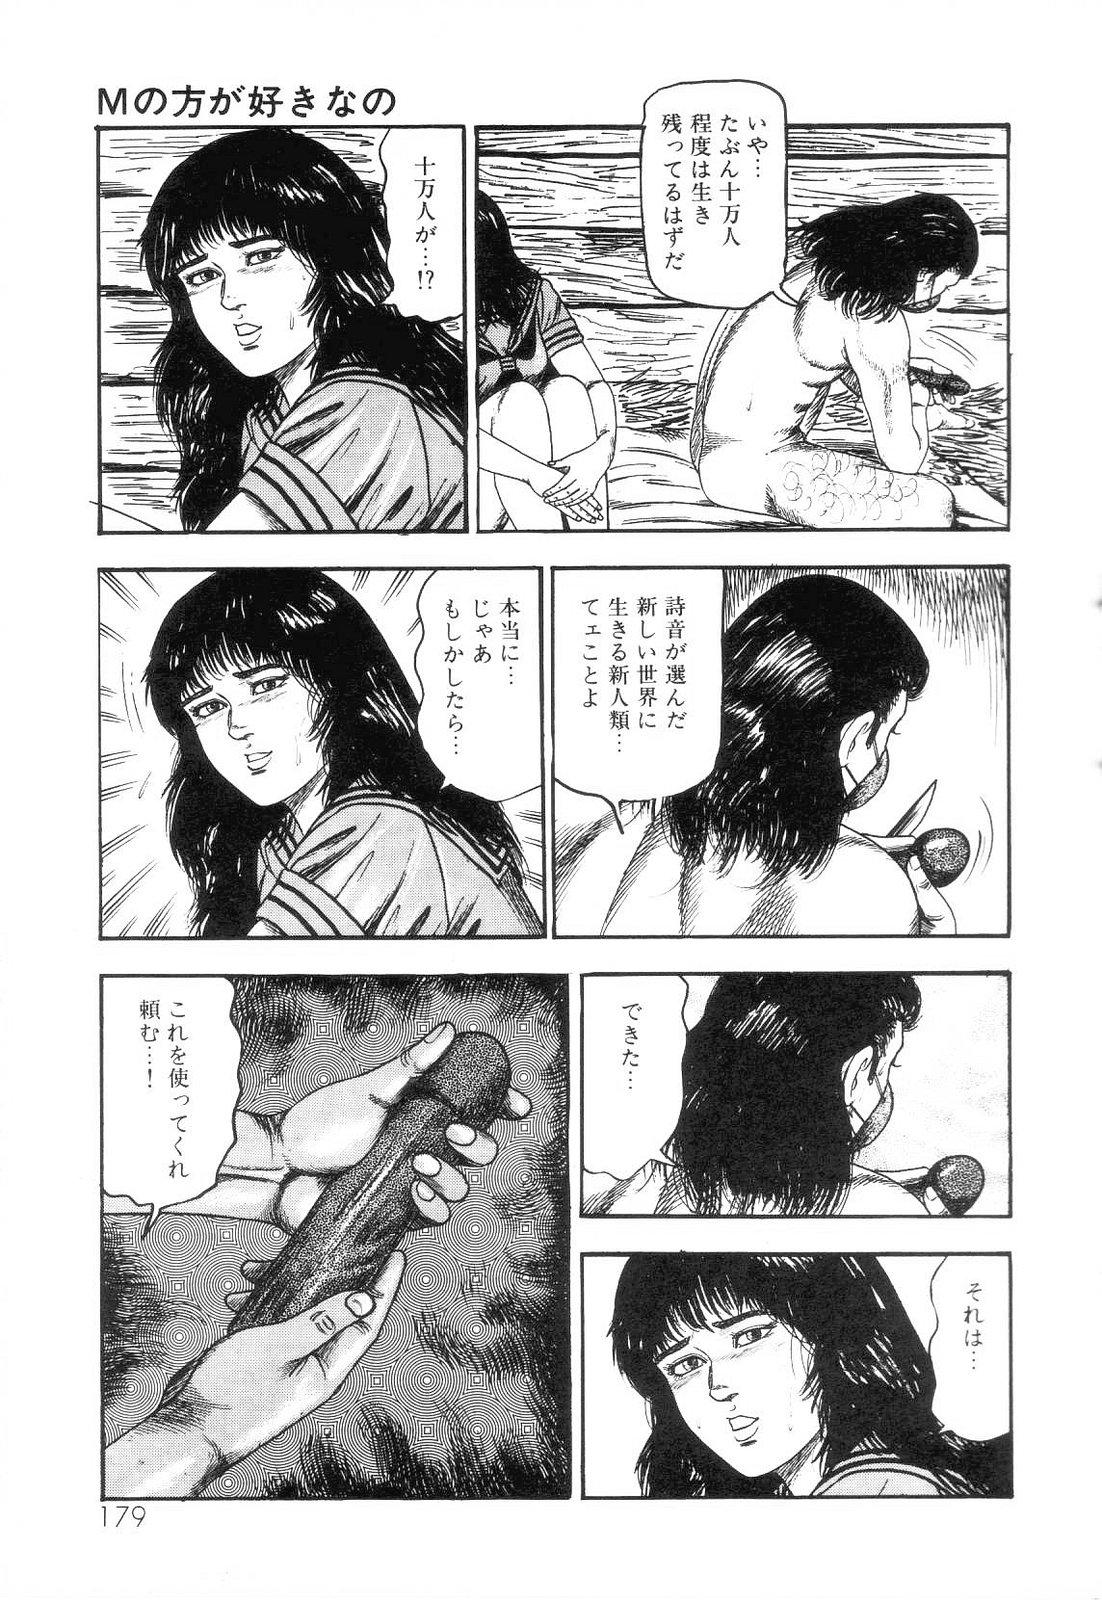 Shiro no Mokushiroku Vol. 3 - Reisai Miho Hen 180